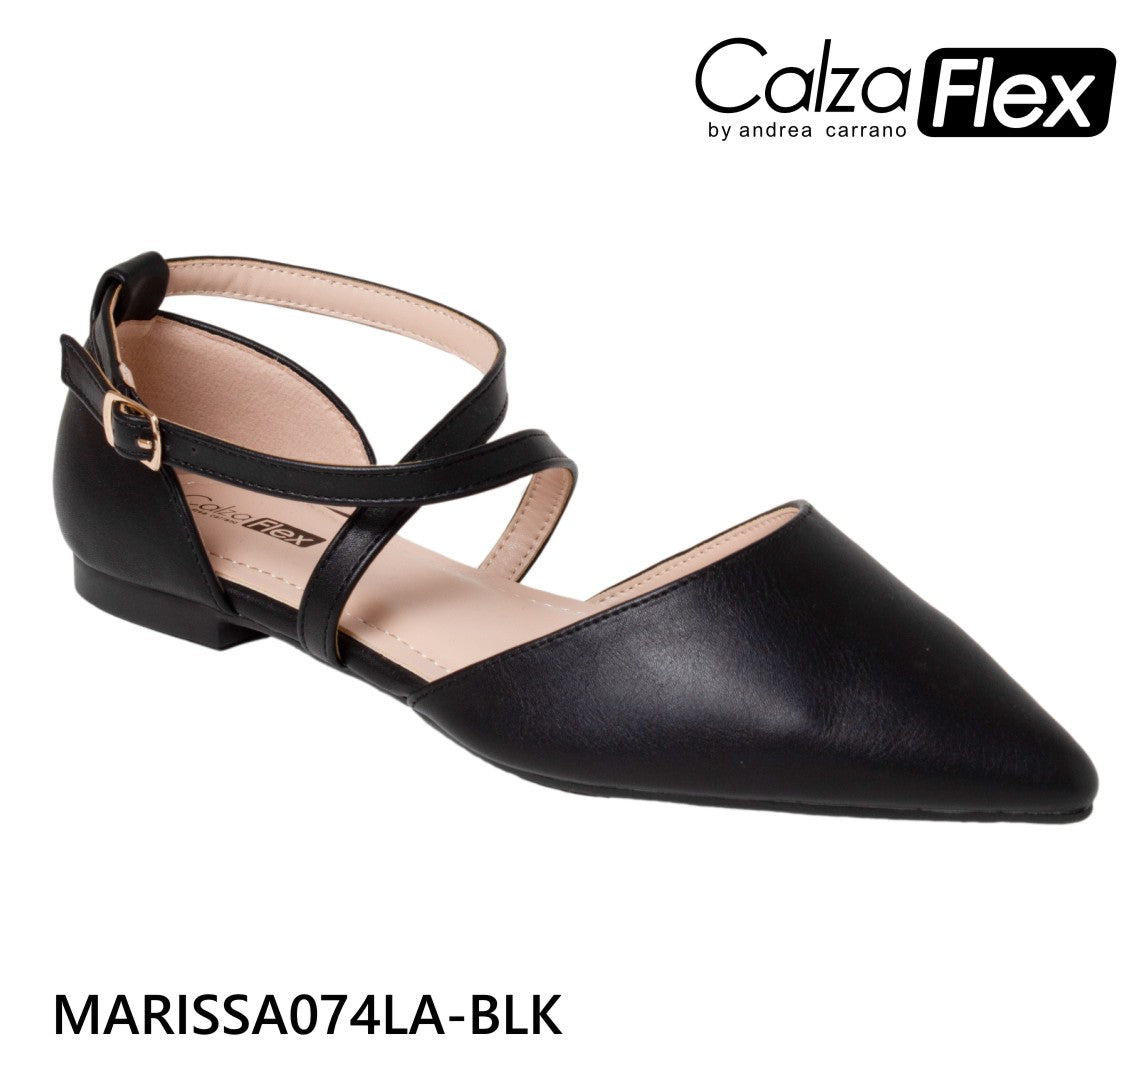 CALZADOS-zapatos-calzaflex-marissa-p-damas-11